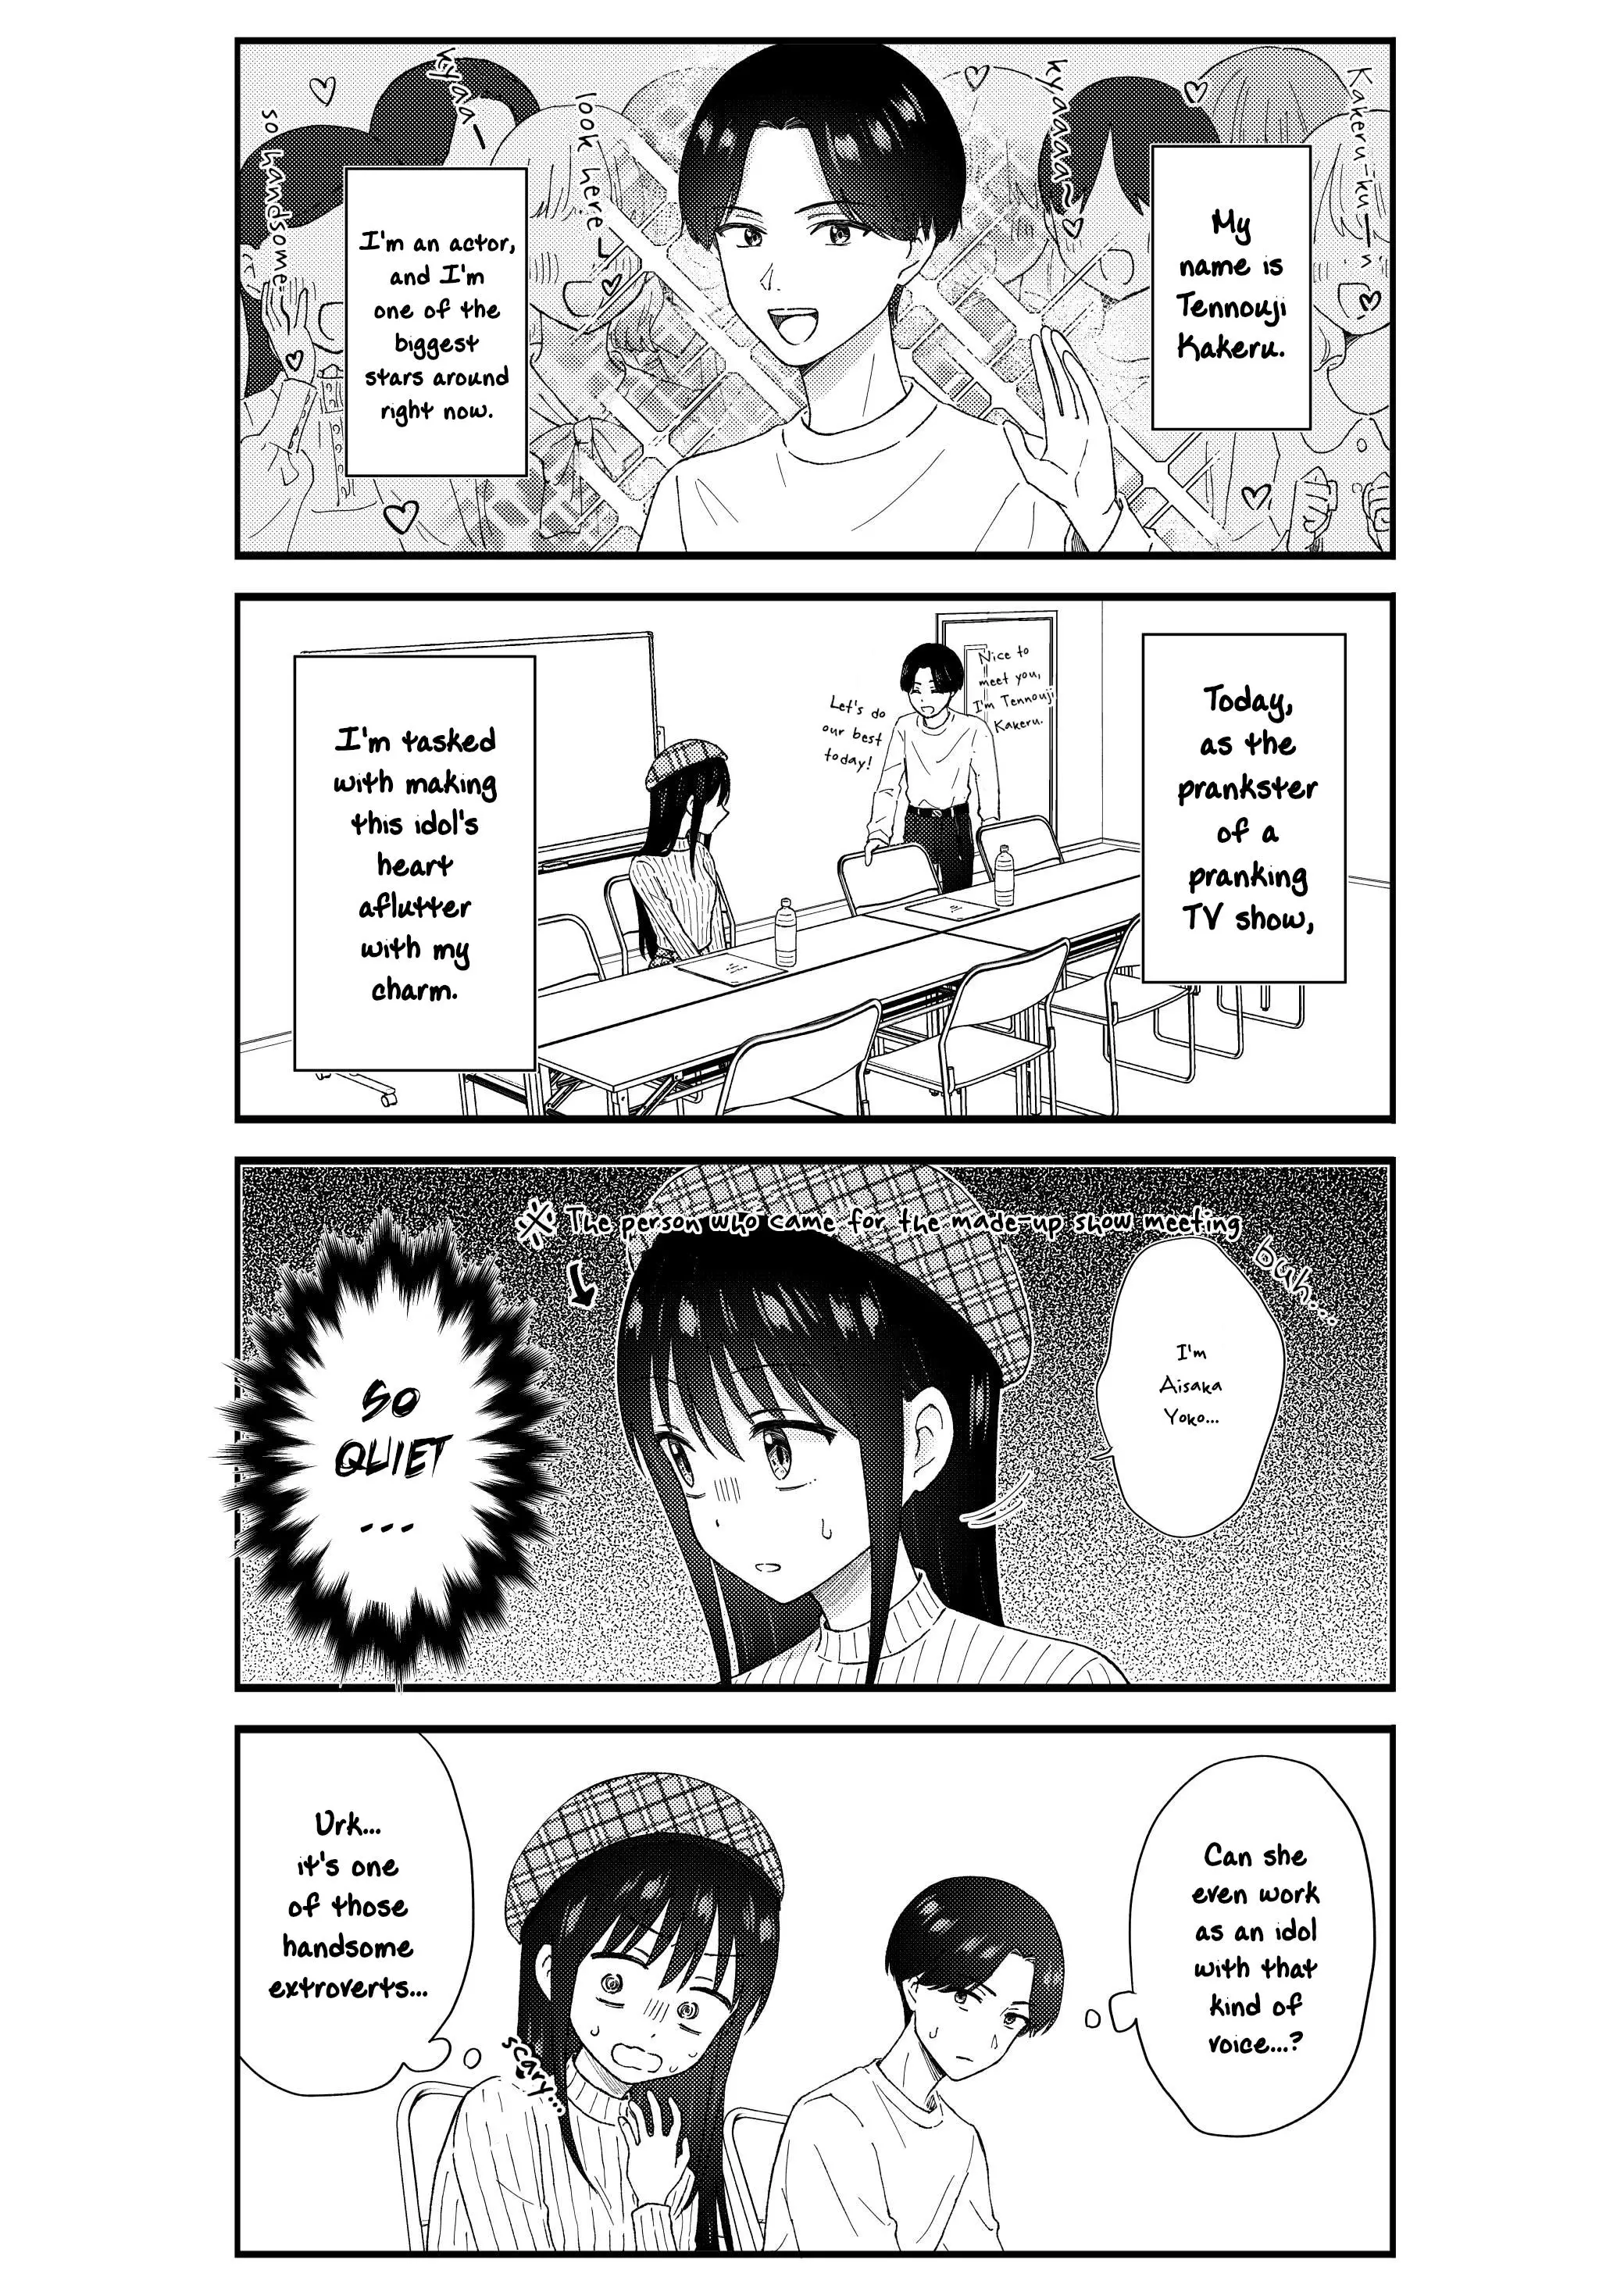 Kimoota, Idol Yarutteyo - 59 page 2-26eccd48